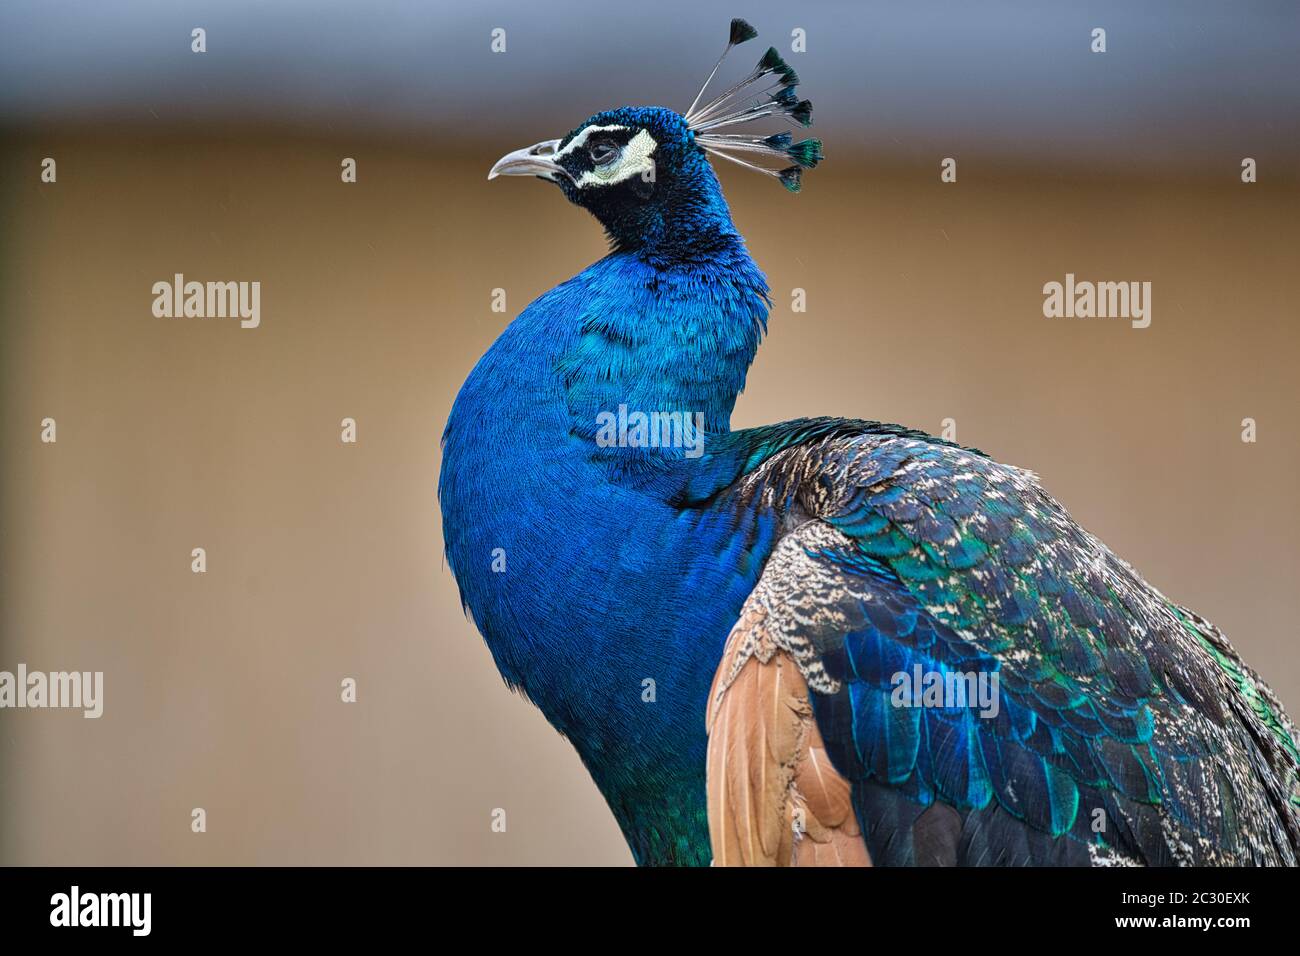 Pfau, Blauer Pfau, pavo cristatus, ave India, ave, Vogel, ave azul, Hühnervögel , animal, azul, pluma, Foto de stock